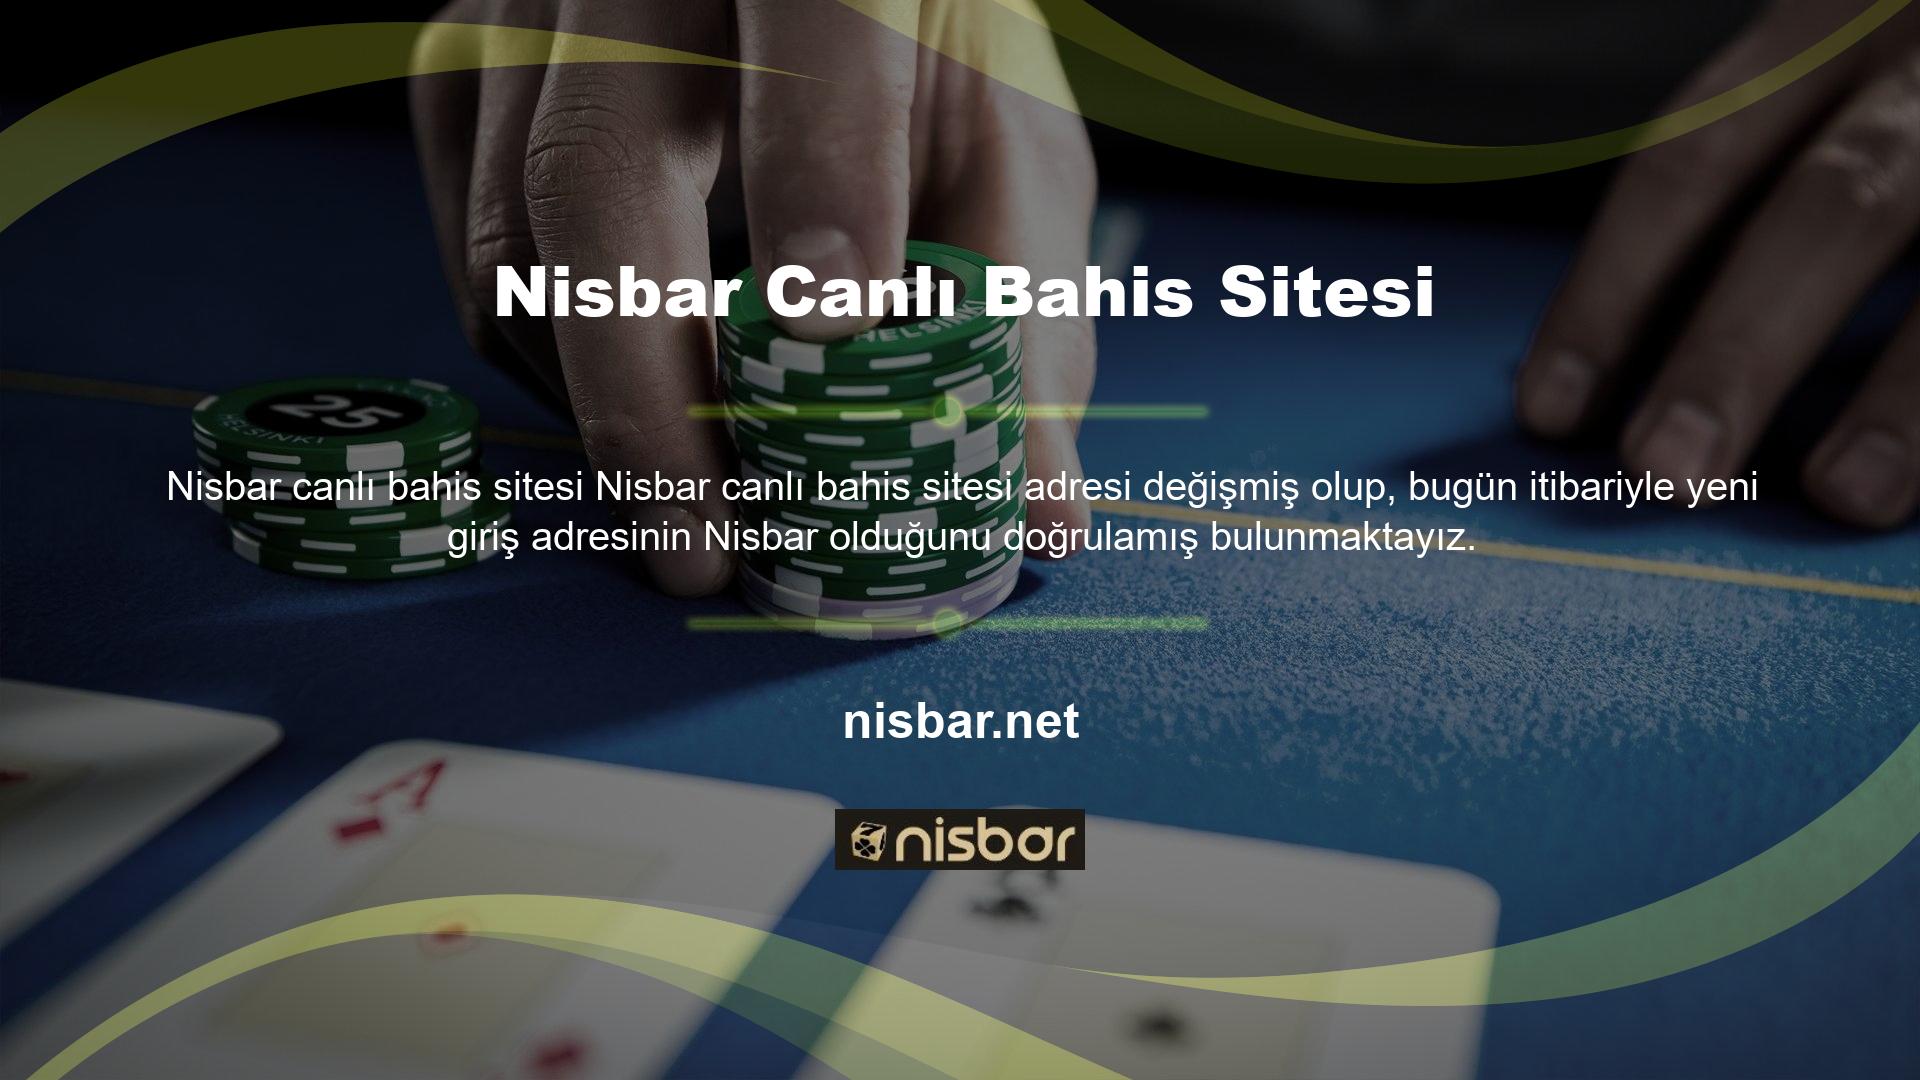 24 saat önce yayınlanan Nisbar adresi kapatıldı ancak bu kez site yöneticisi Nisbar adresini 30 dakikada başarılı bir şekilde yayınladı